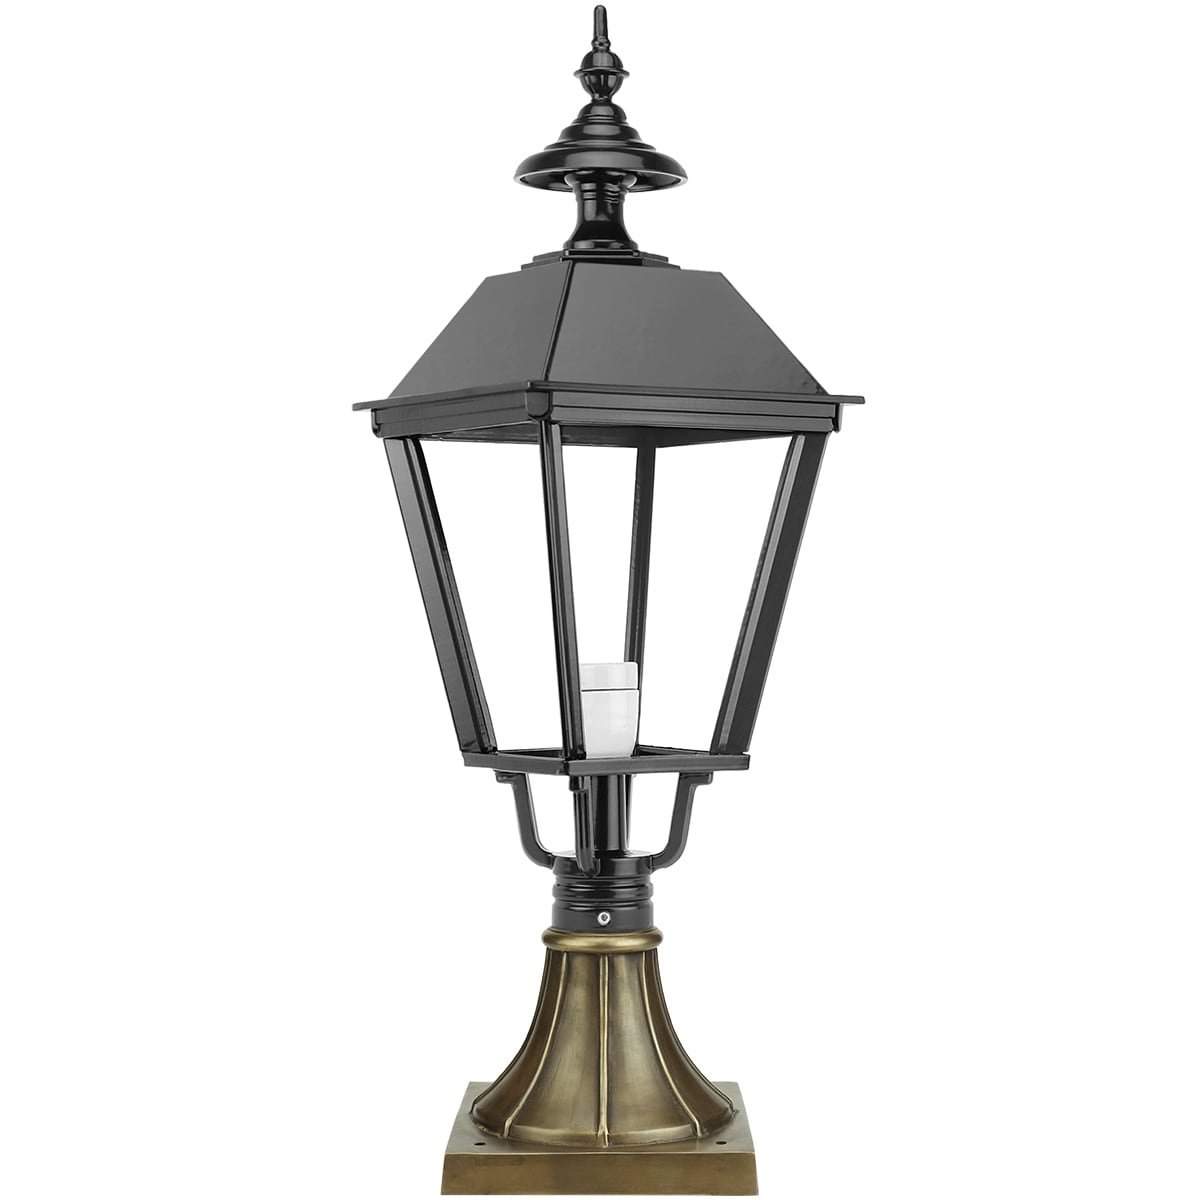 Sokkellamp Eexterveen brons - 77 cm